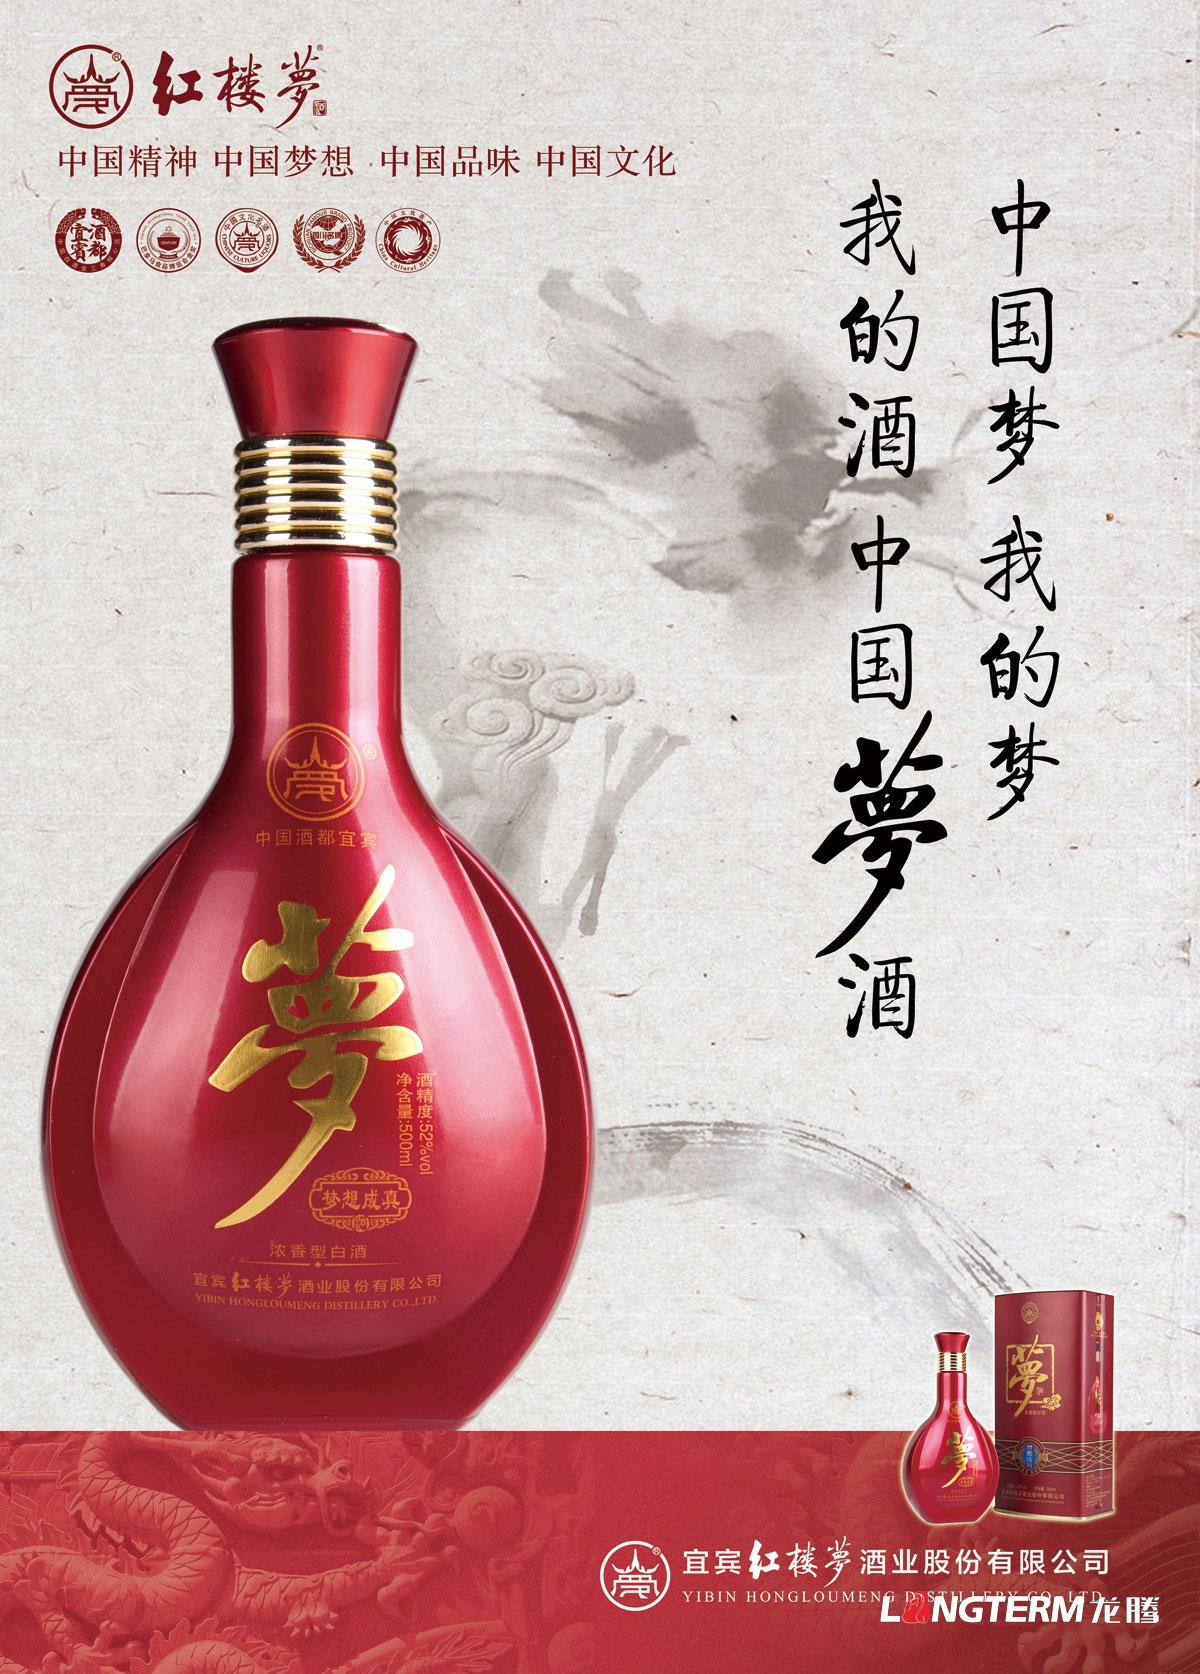 红楼梦酒业集团公司折页广告设计|宜宾白酒产品形象宣传物料设计